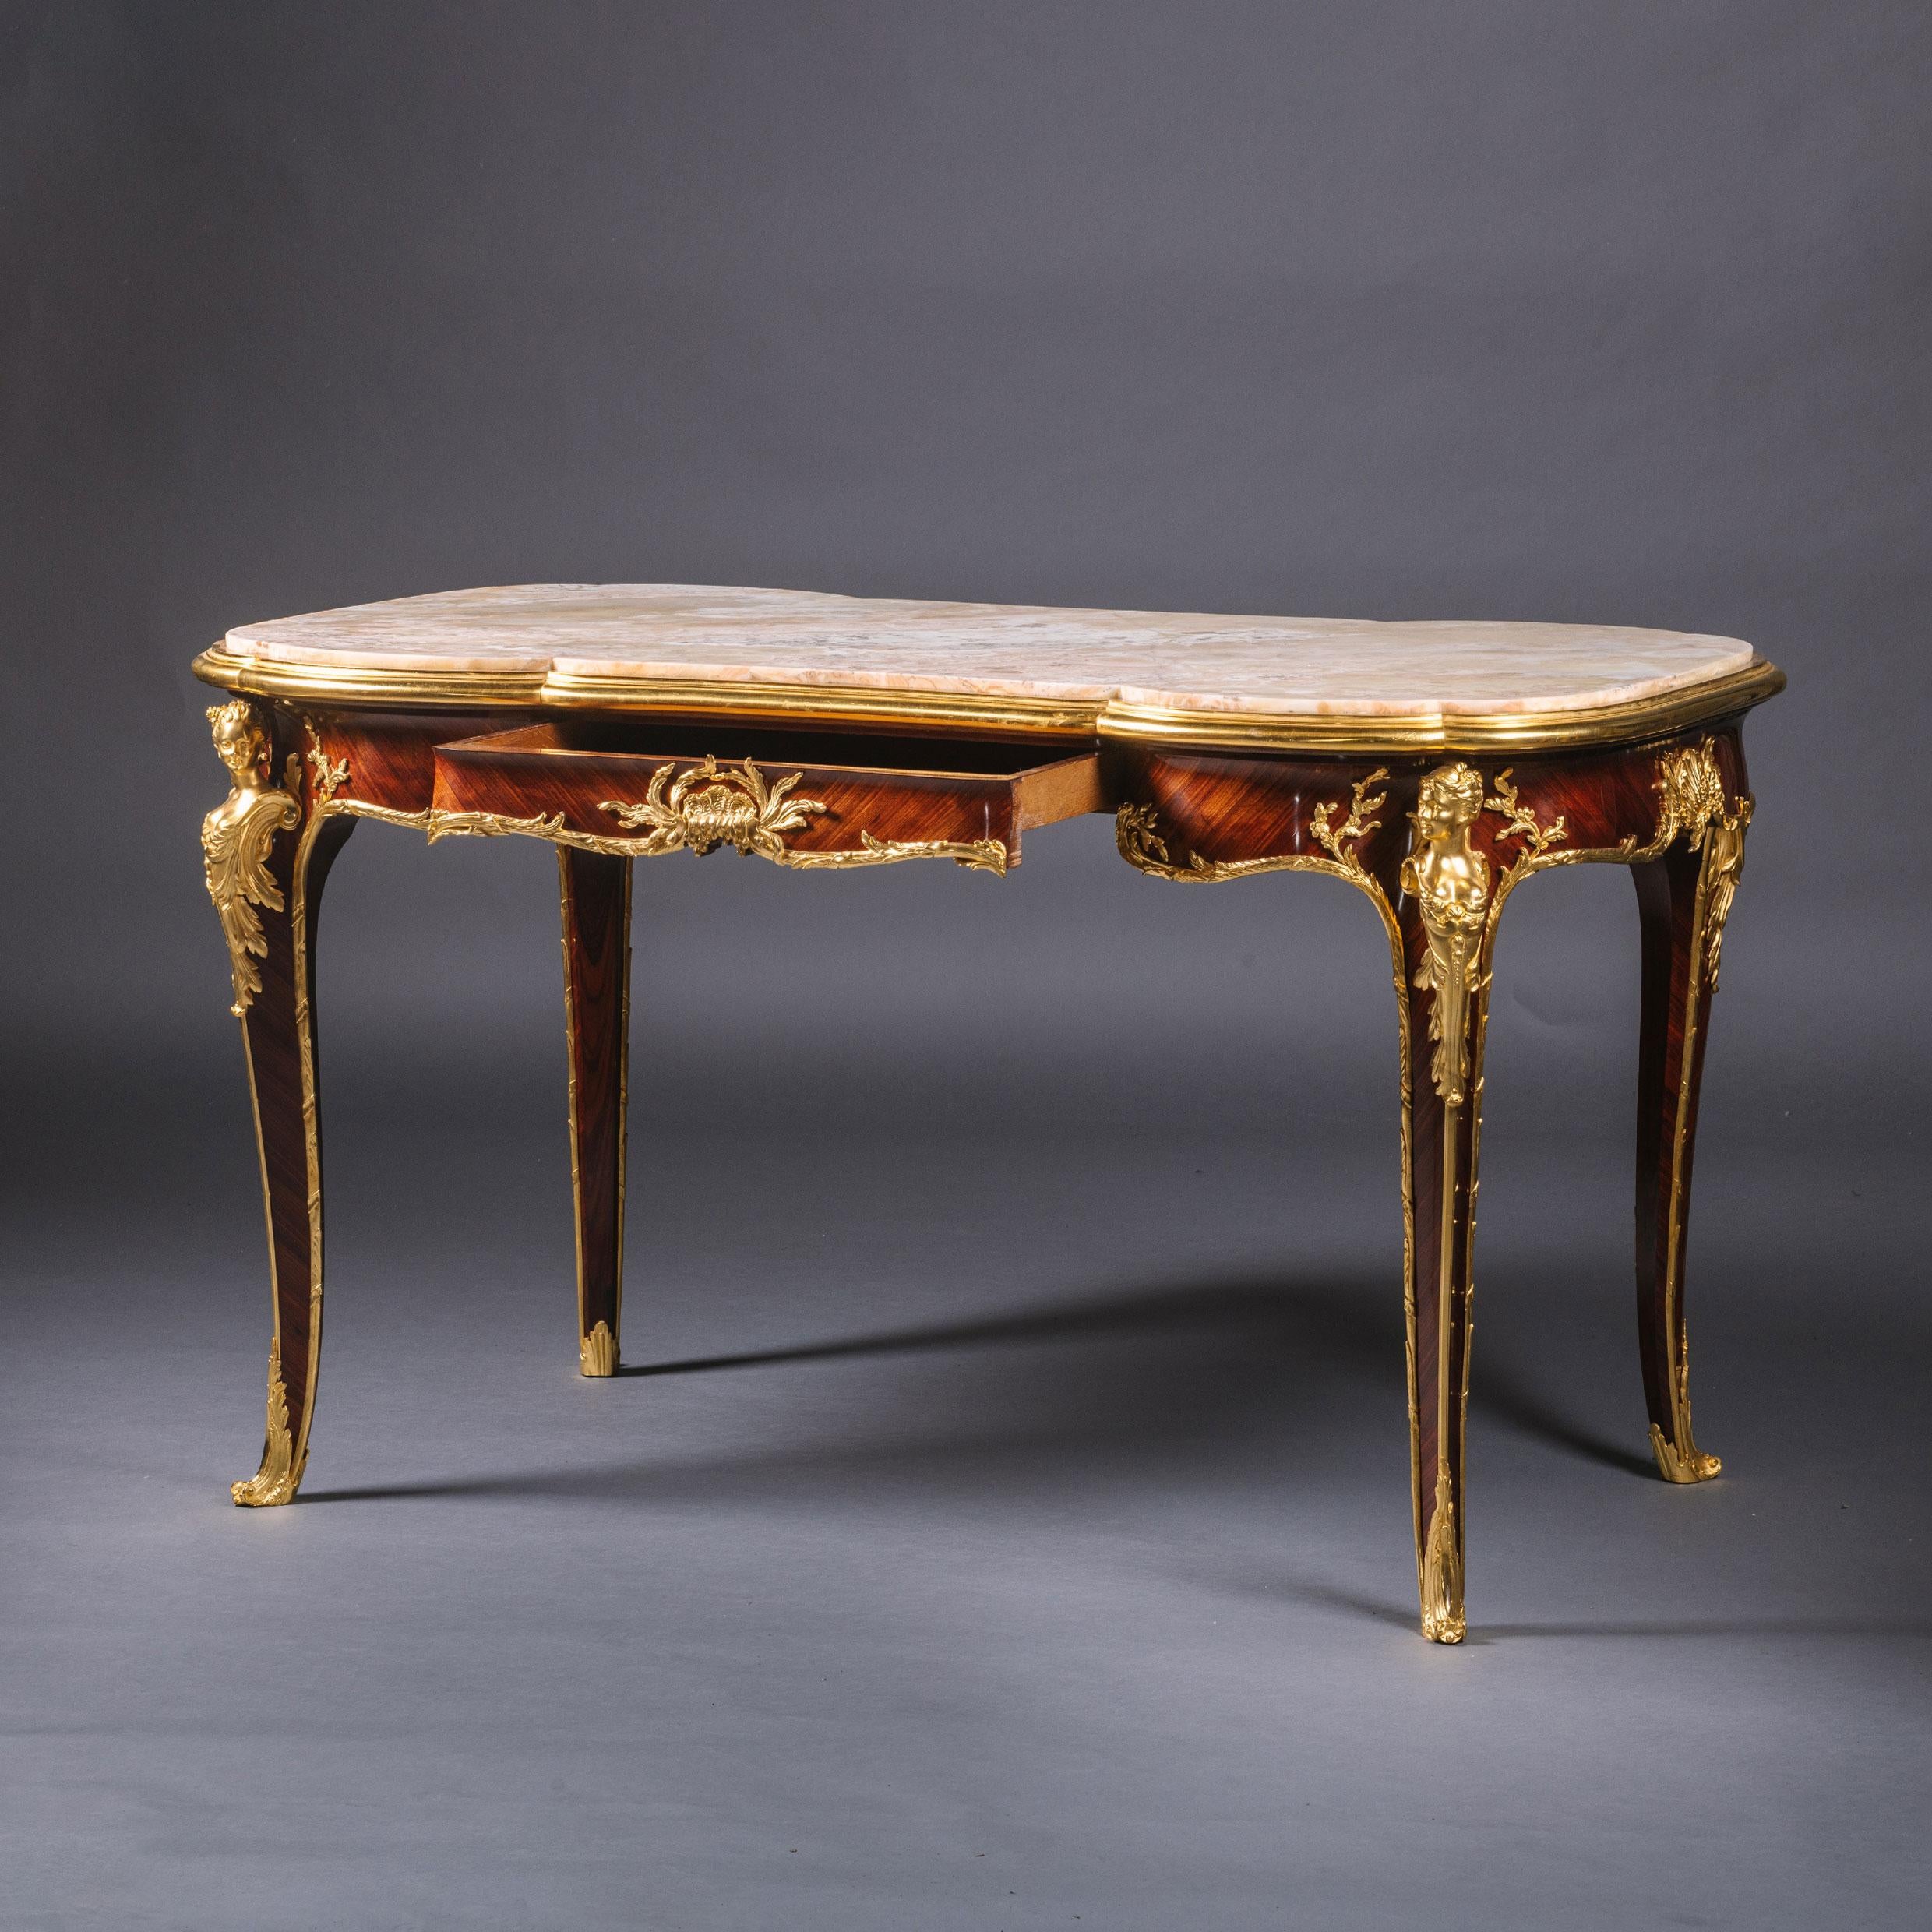 Seltener Belle-Epoque-Tisch mit Intarsien aus vergoldeter Bronze, von François Linke. Die Halterungen wurden von Léon Messagé entworfen. 

Signiert 'F. Linke